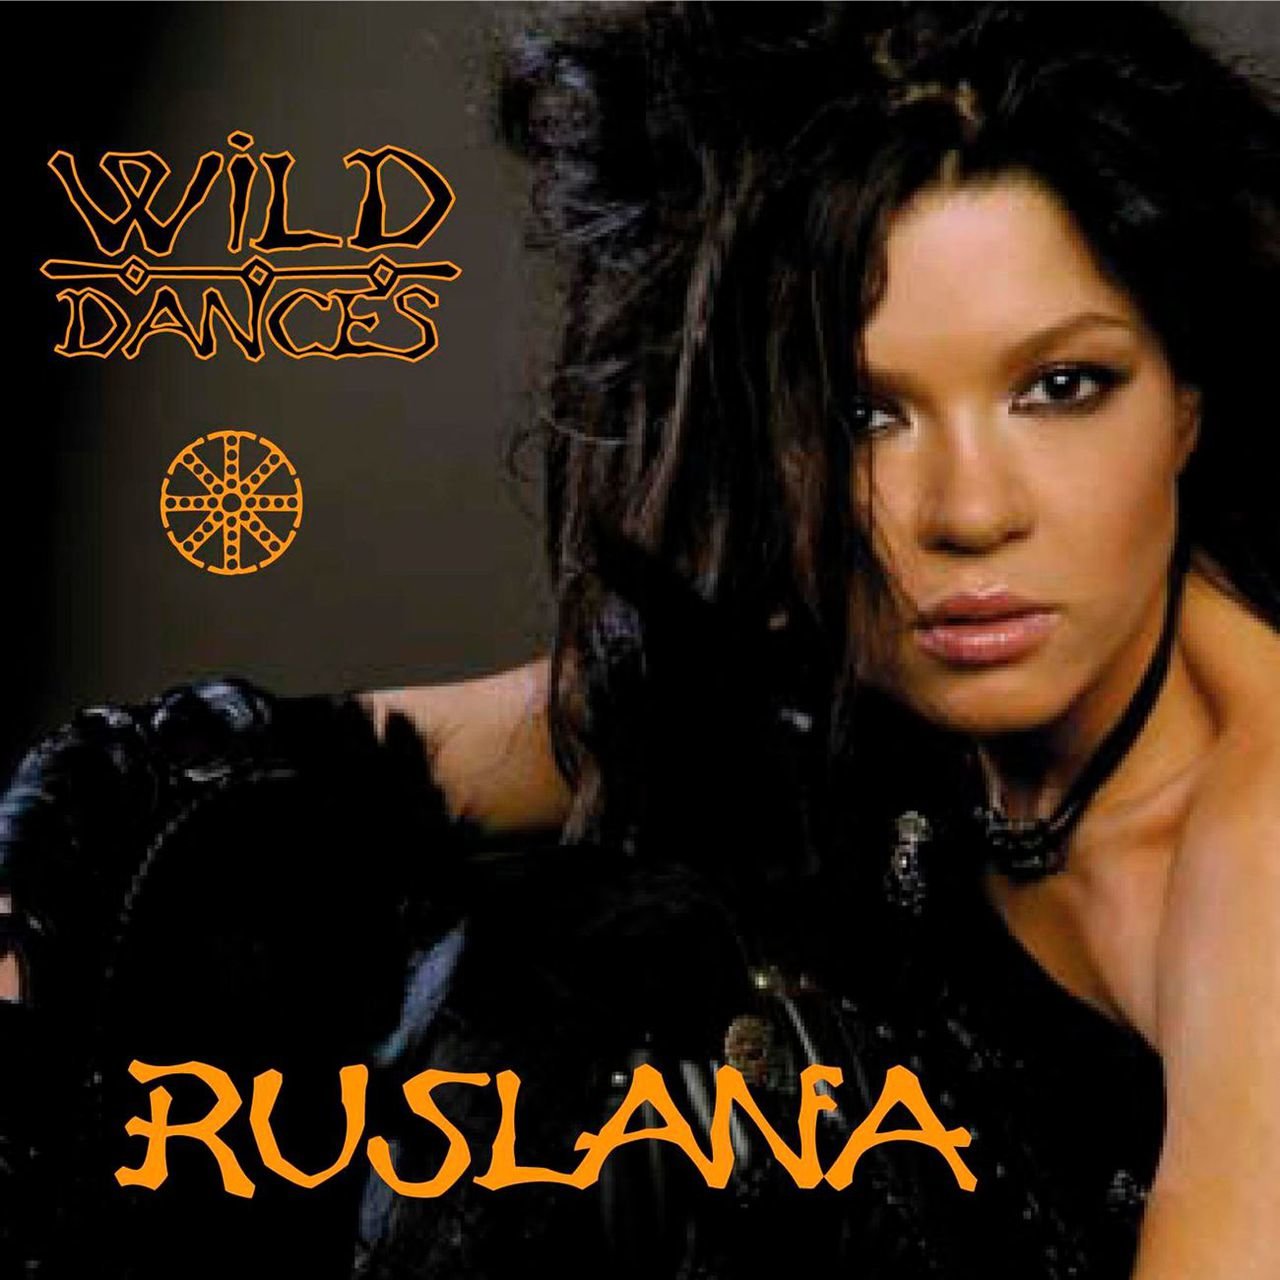 Ruslana Wild Dances cover artwork